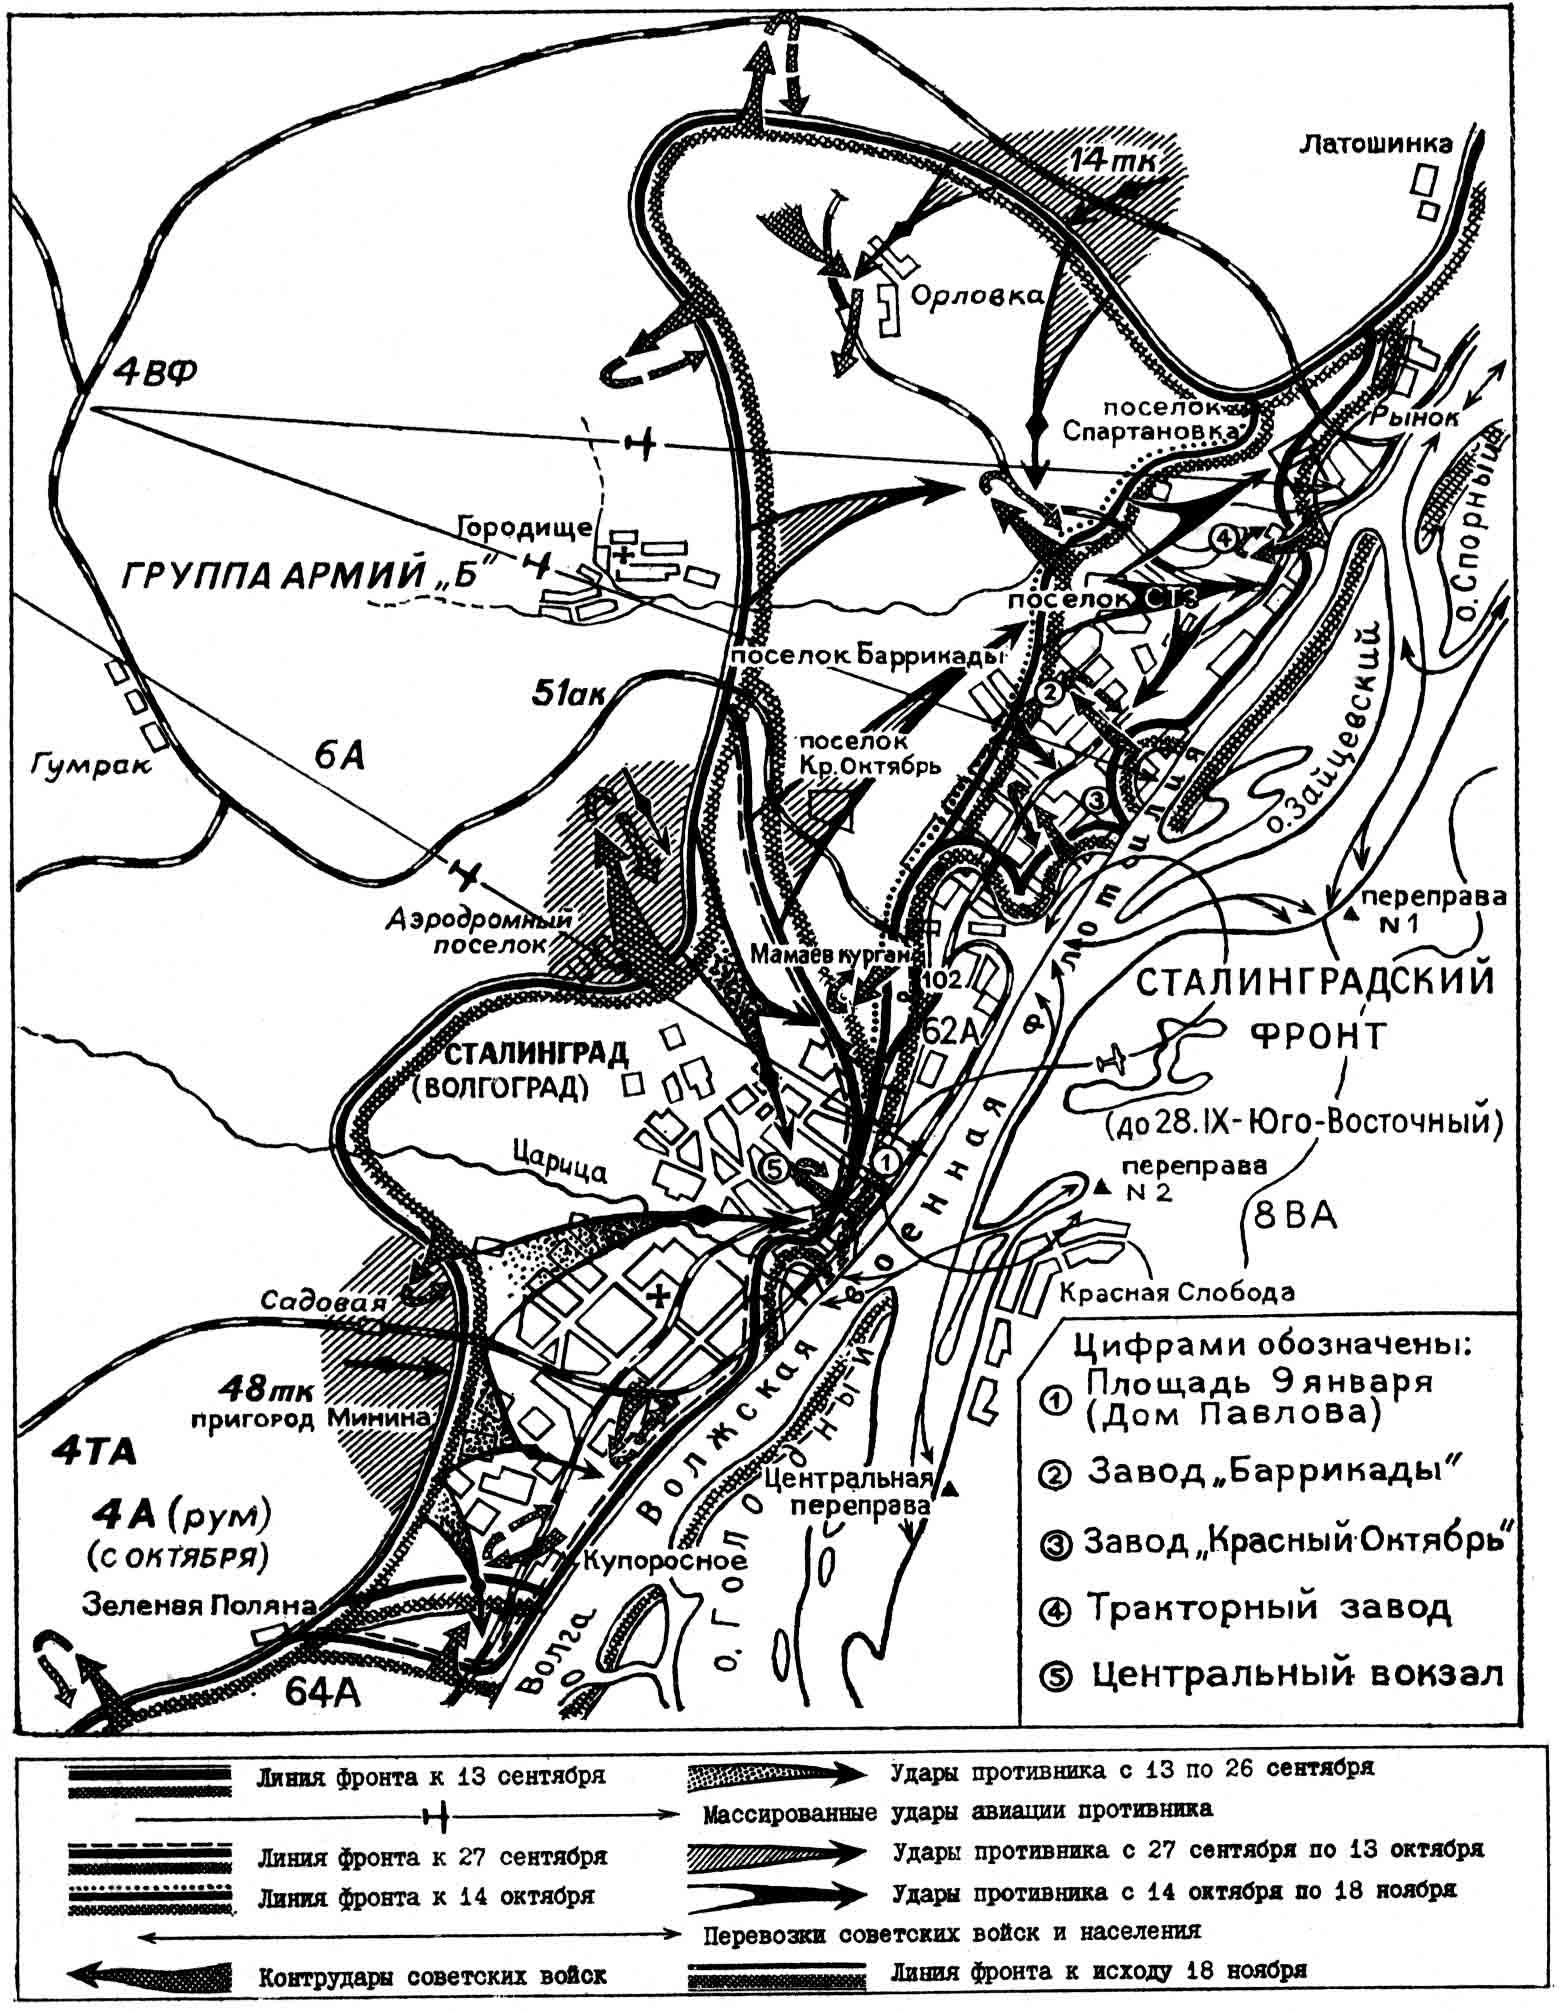 Сталинградская битва - карта, подробные сведения ВОВ